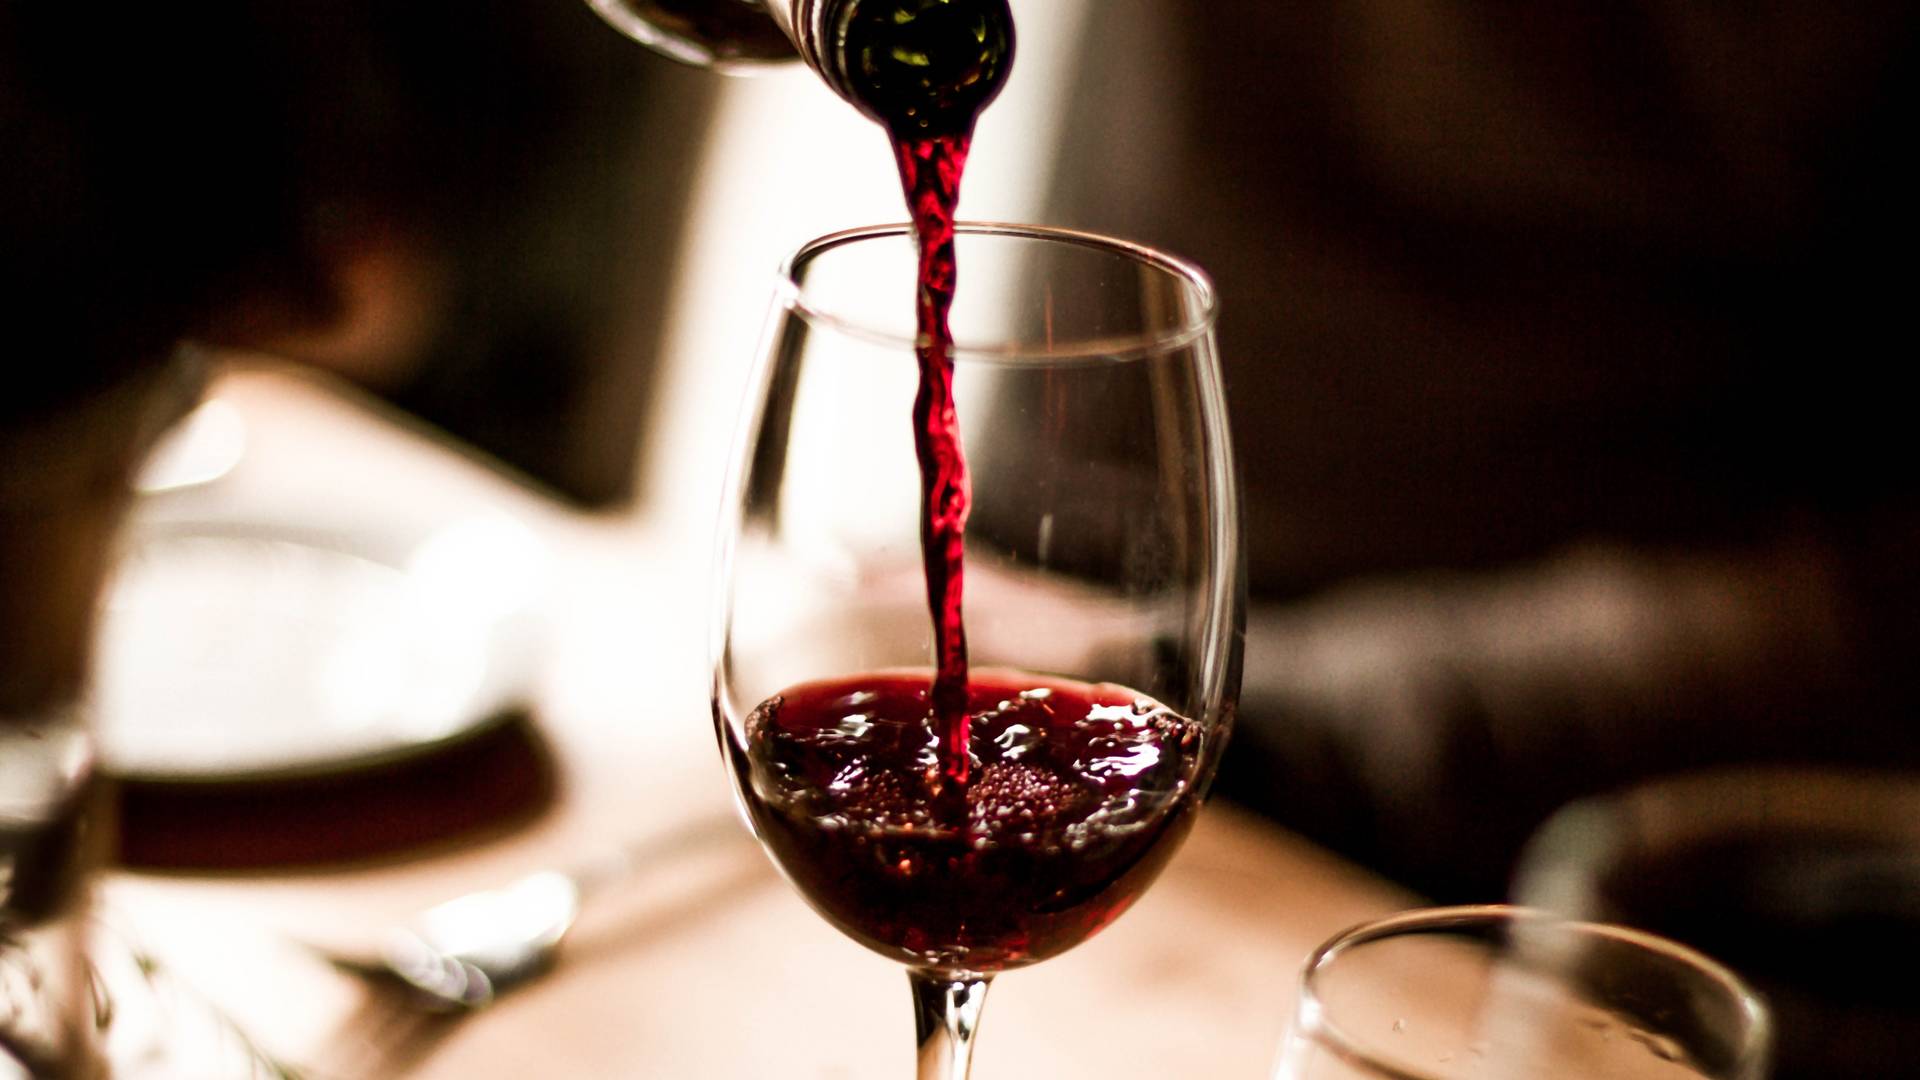 Picie wina sprzyja inteligencji. Tak twierdzą naukowcy